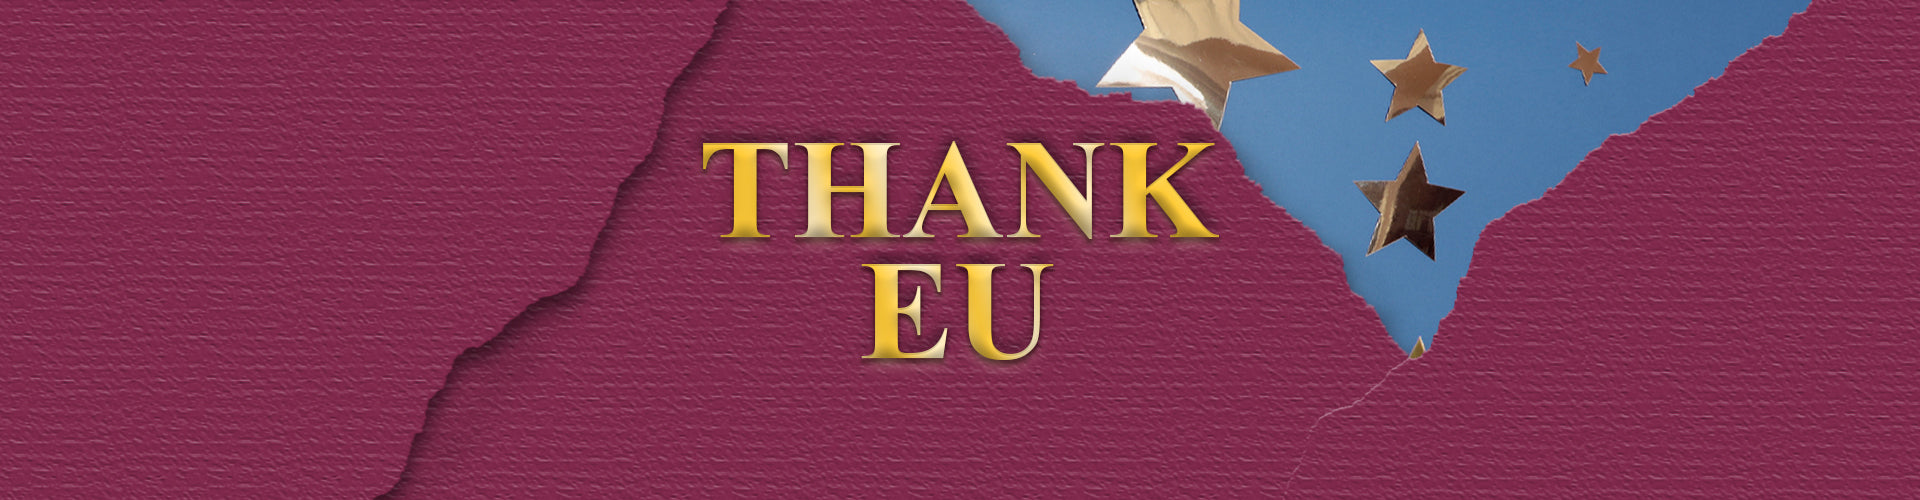 Thank EU